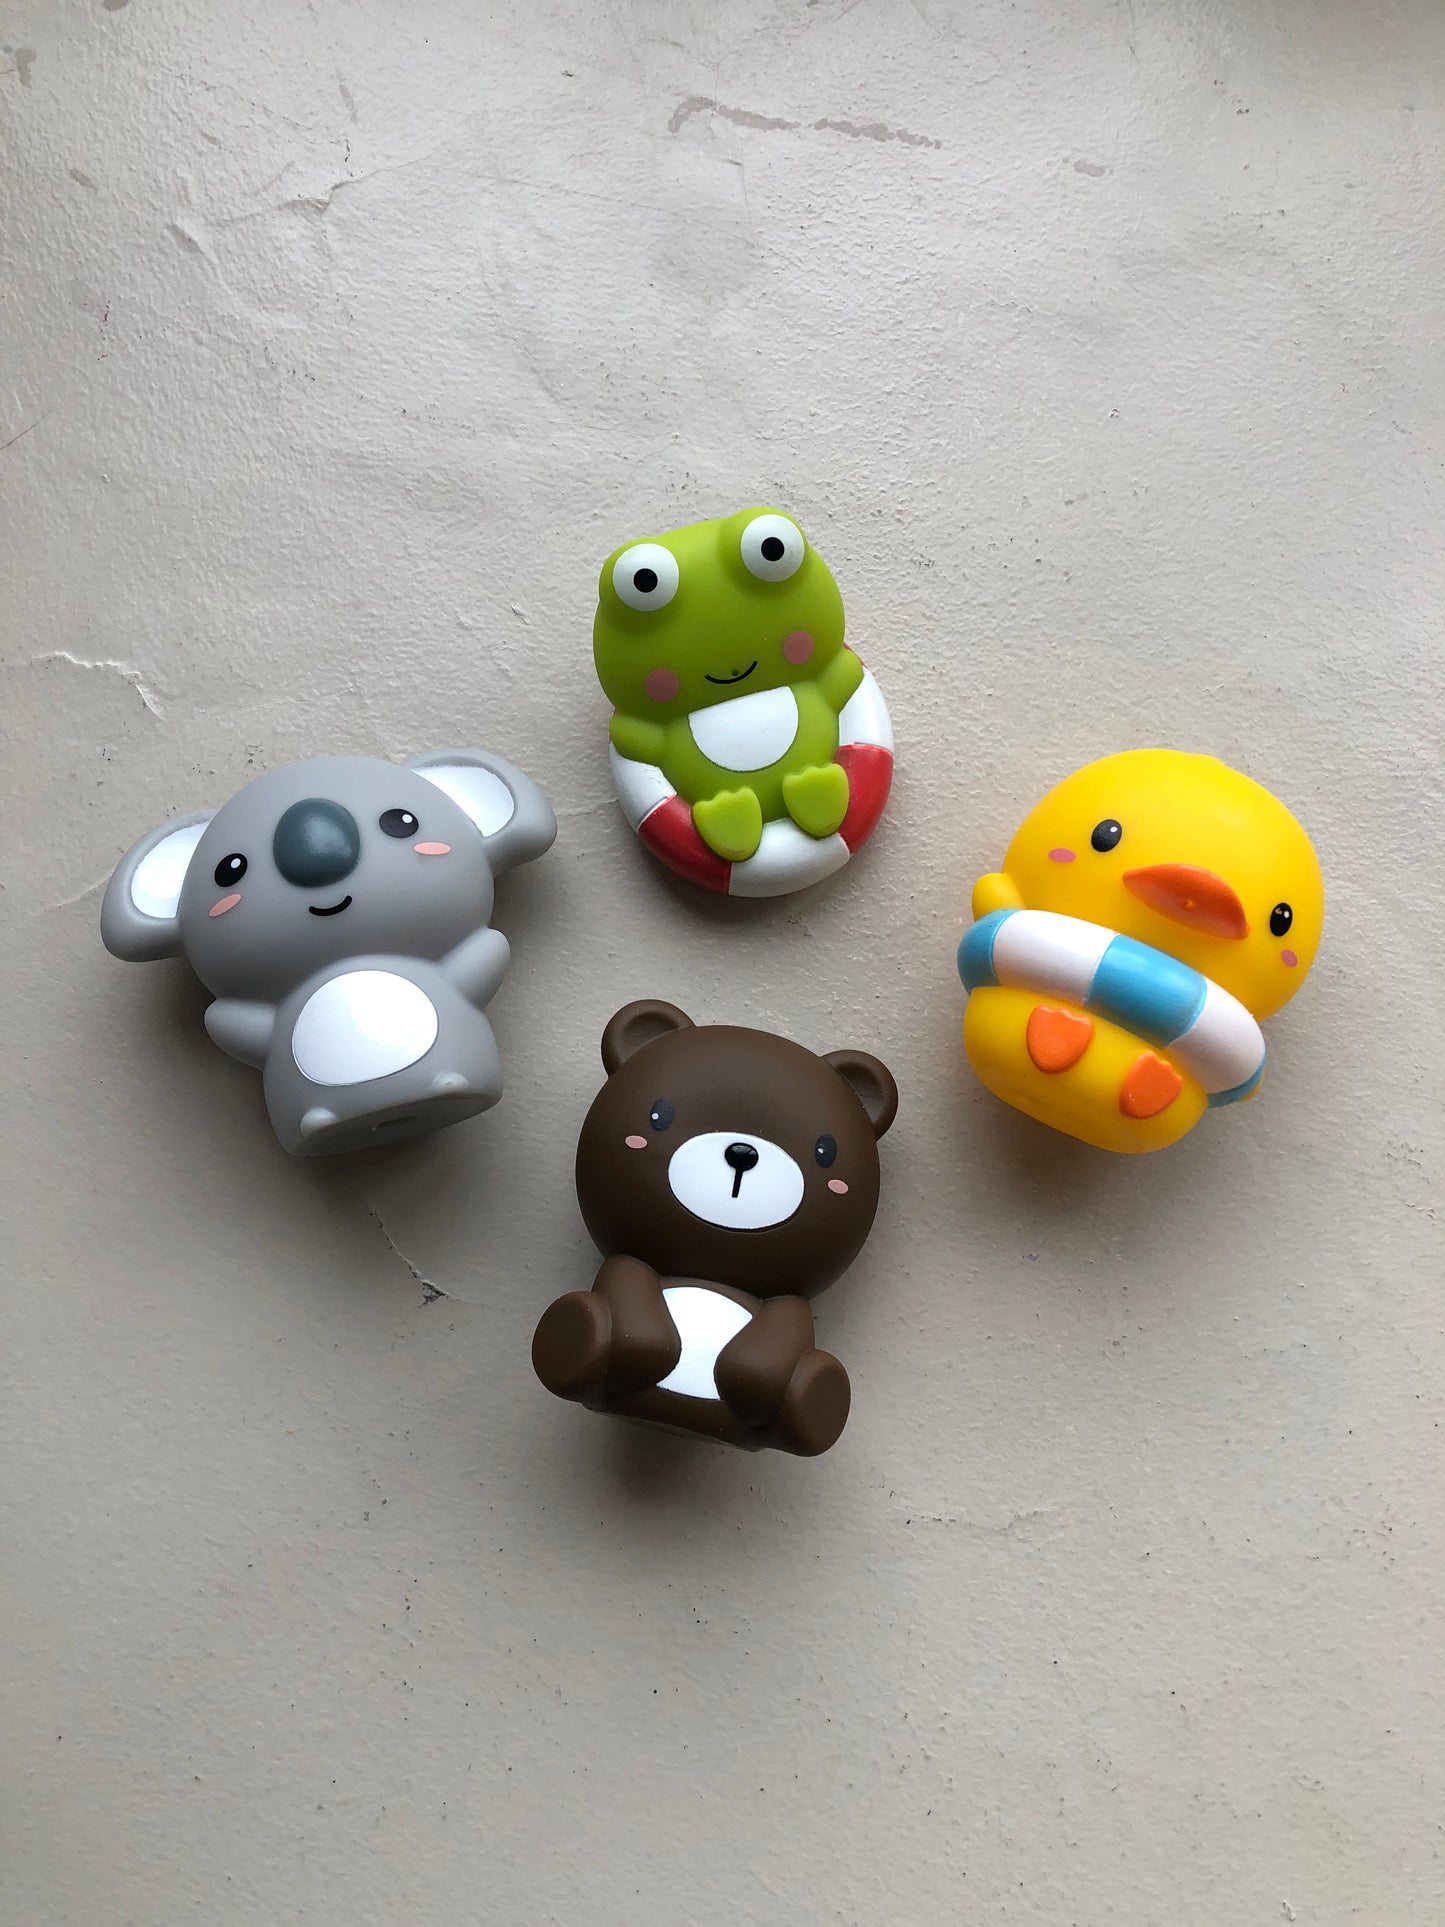 Cute Animal Bath Toy Set